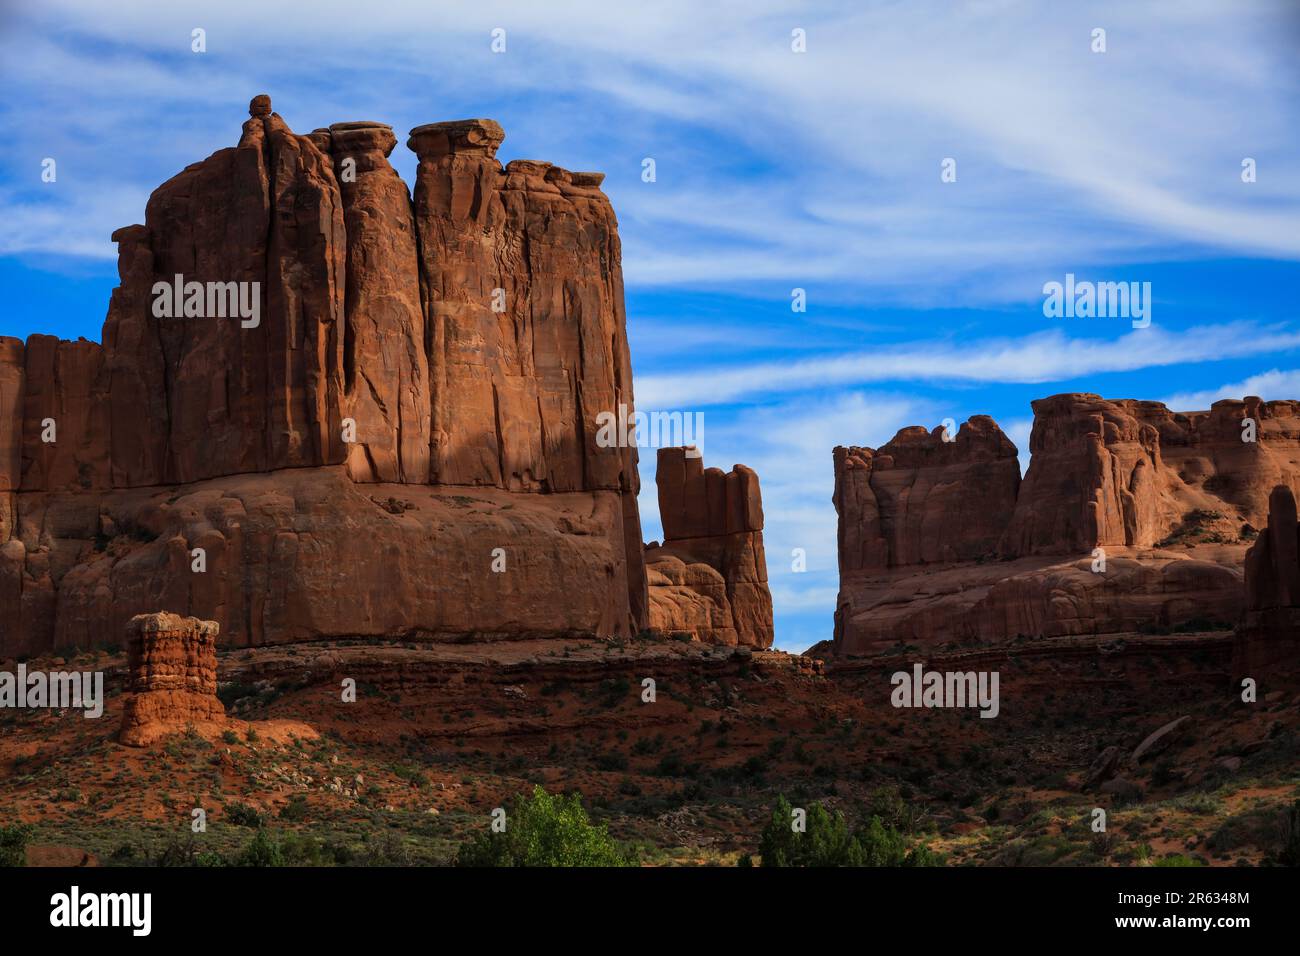 Paesaggio desertico del sud-ovest americano dell'Arches National Park, Utah, con nuvole e sjy blu Foto Stock